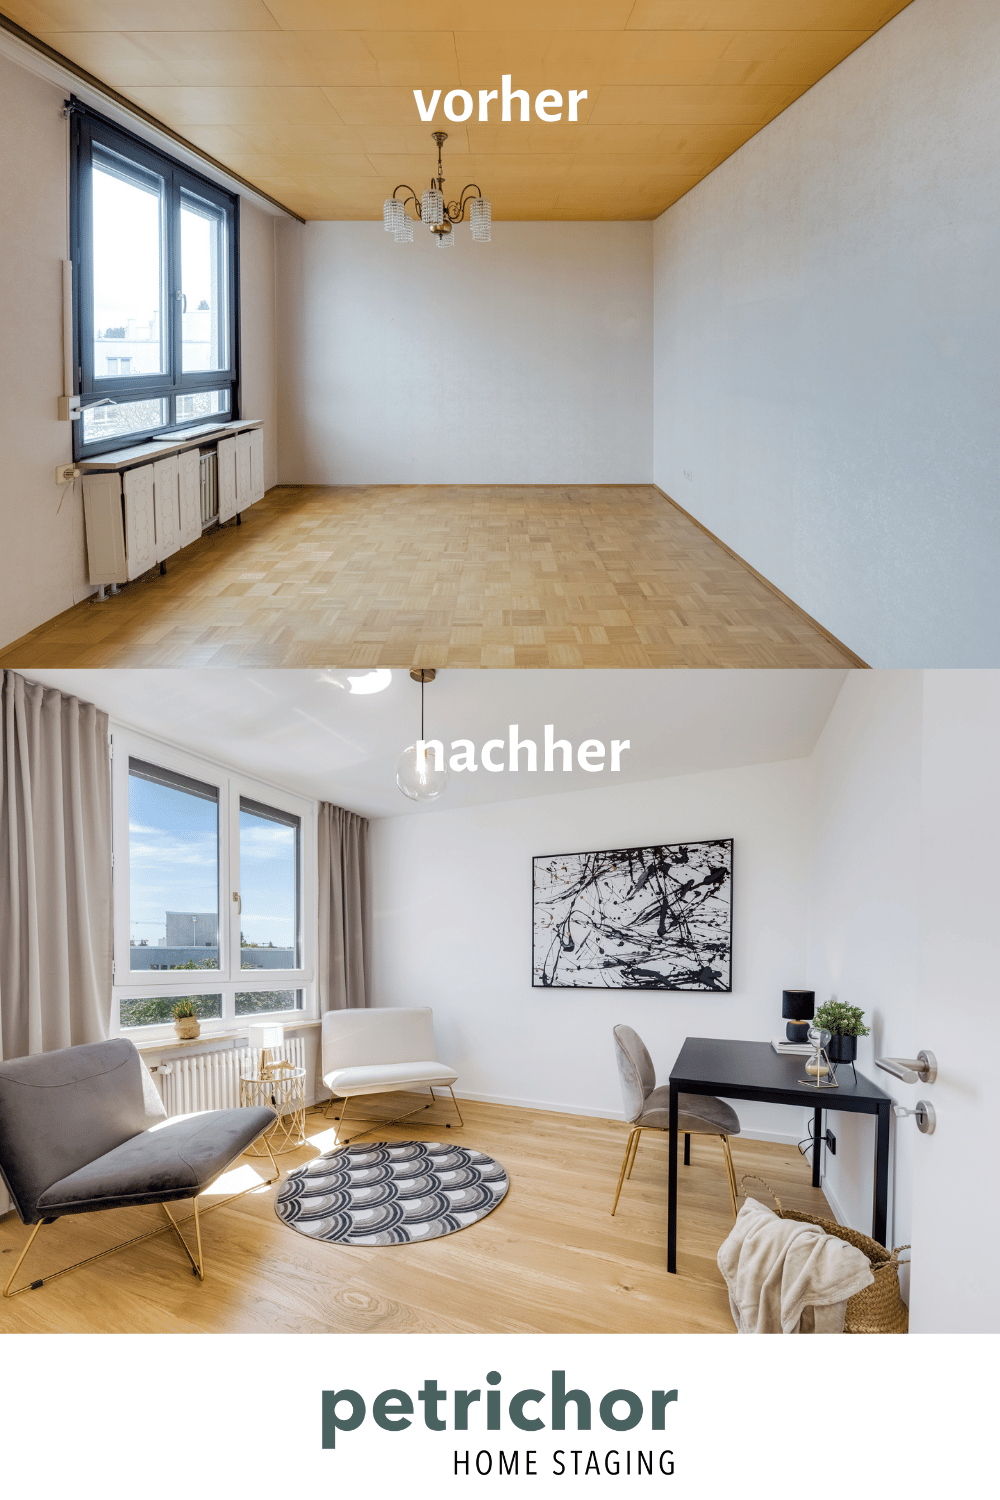 Home Staging Petrichor fix & Flip, Projektentwicklung münchen, Interiorstyling